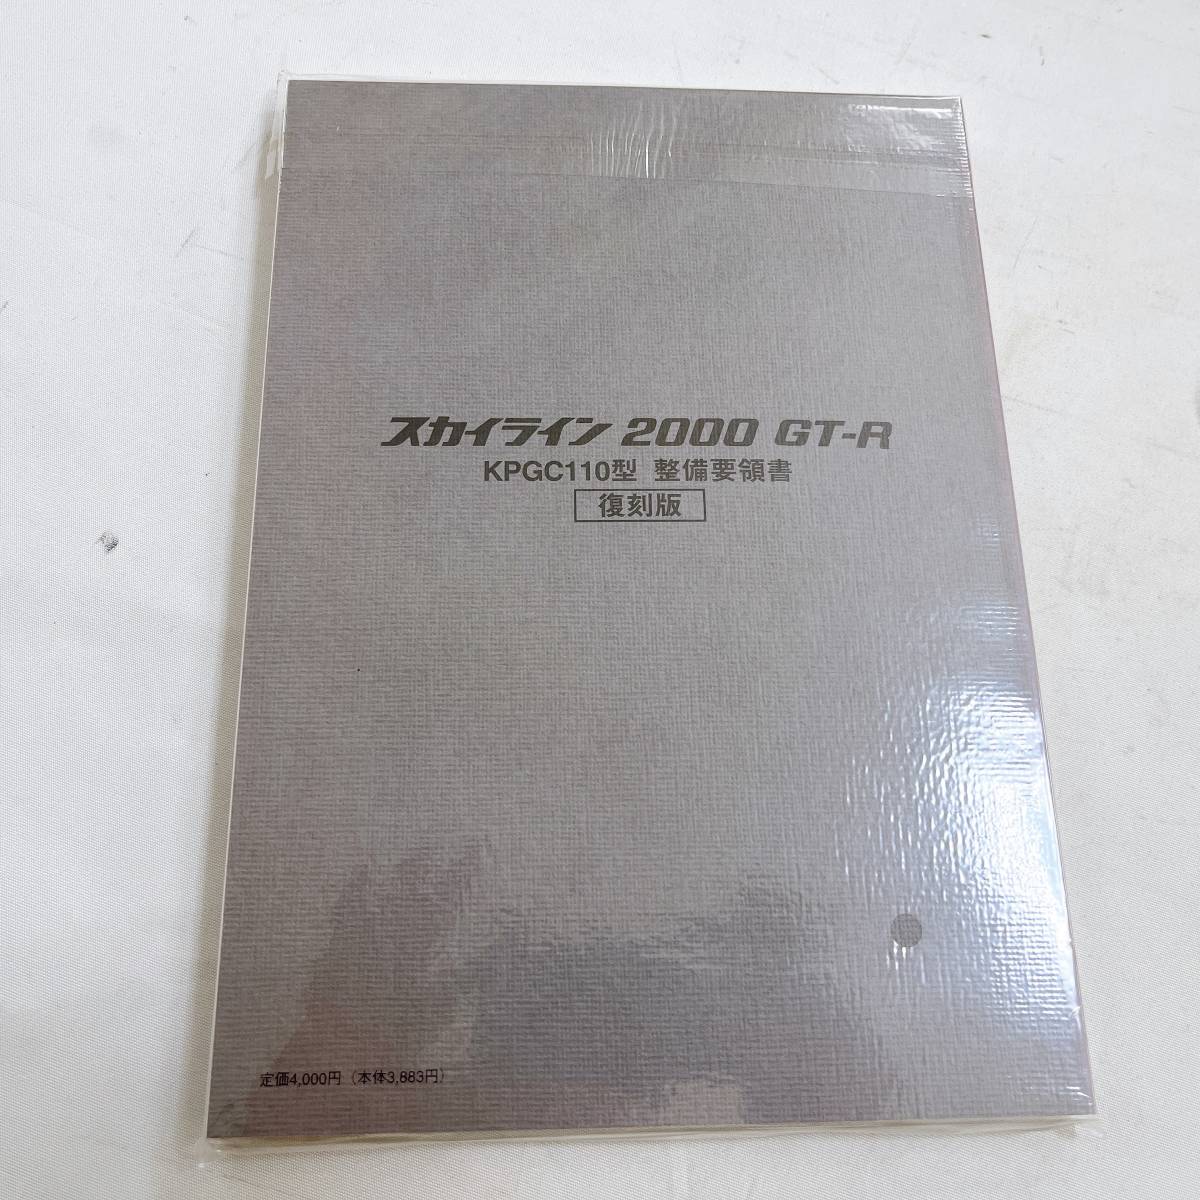  Ken&Mary GT-R обслуживание точка документ переиздание нераспечатанный товар KPGC110 2000 GT-R